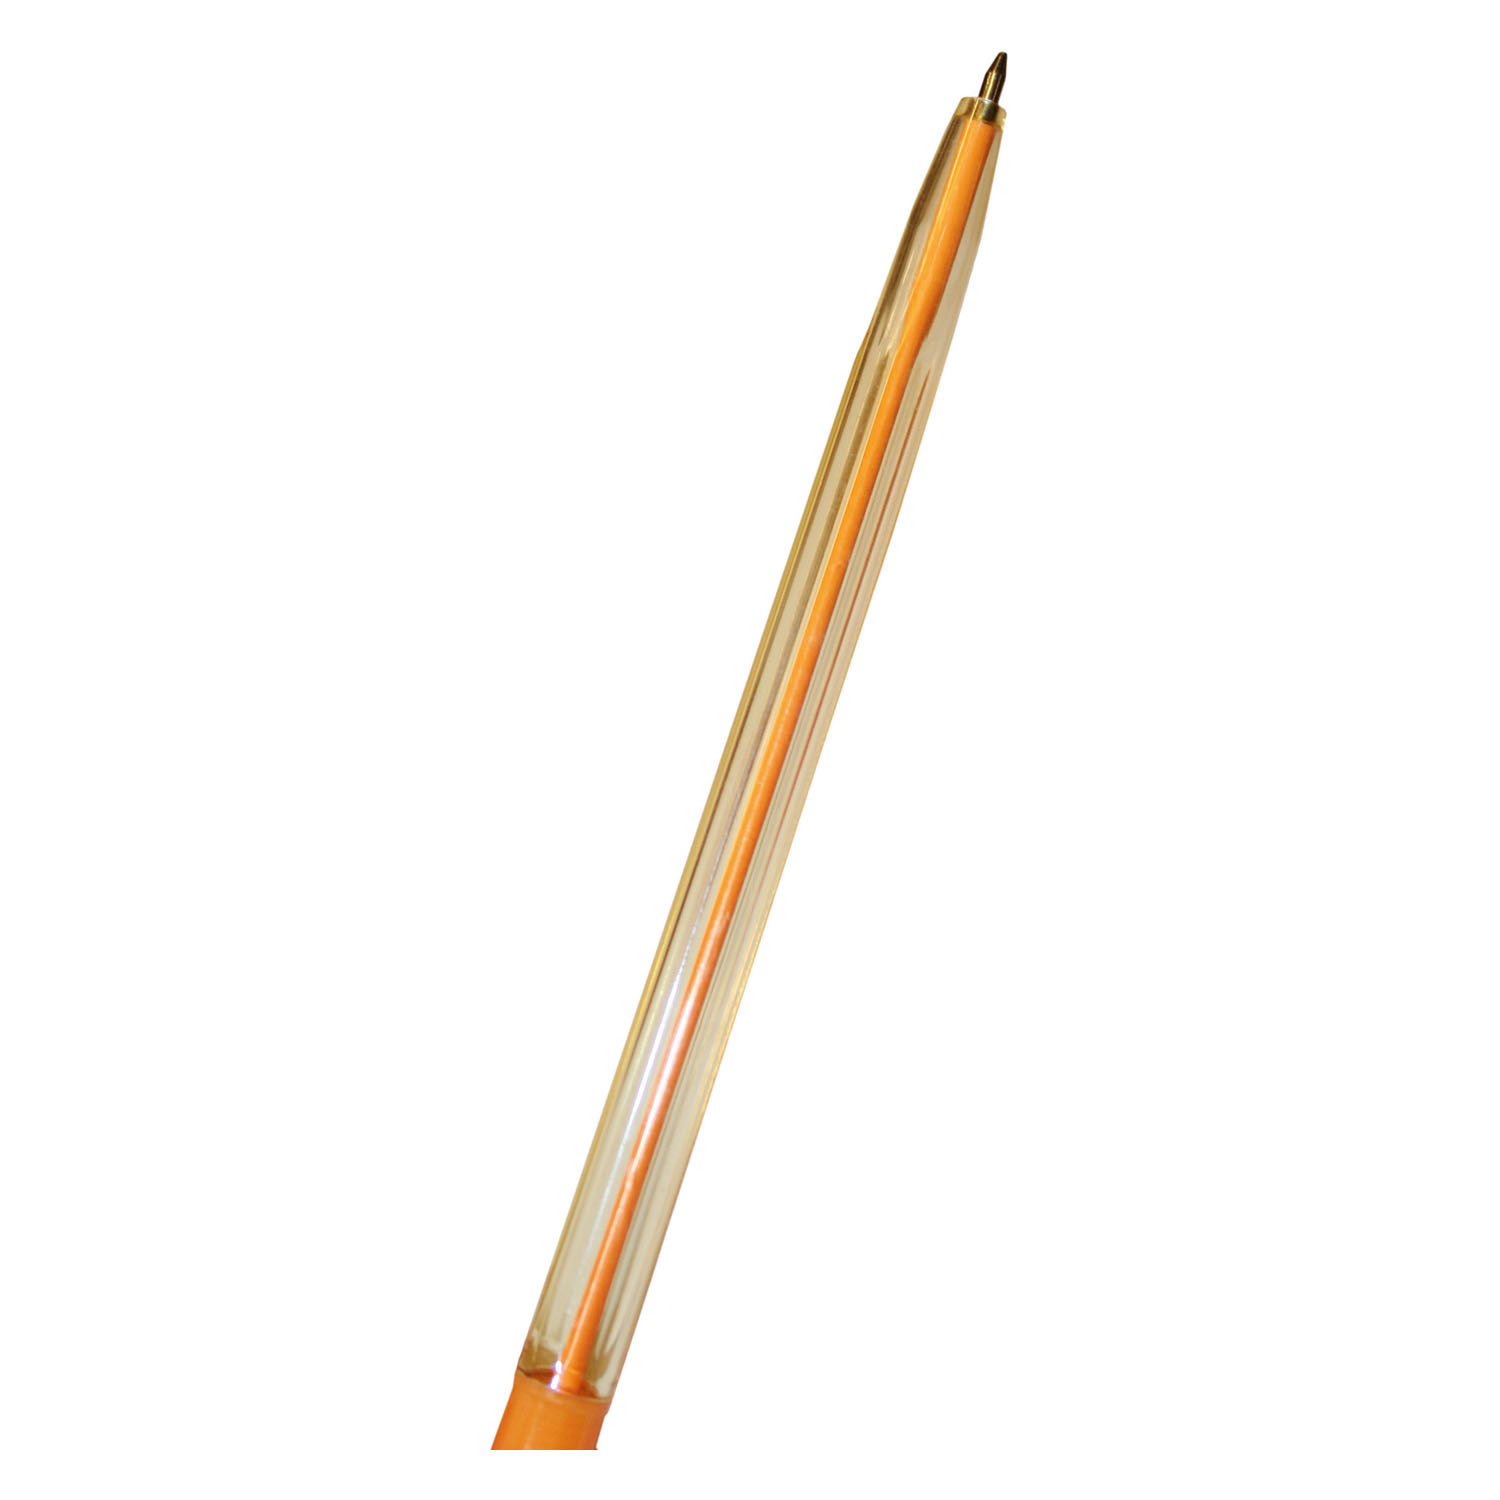 Kugelschreiber - Regenbogenfarben, 10 Stück.